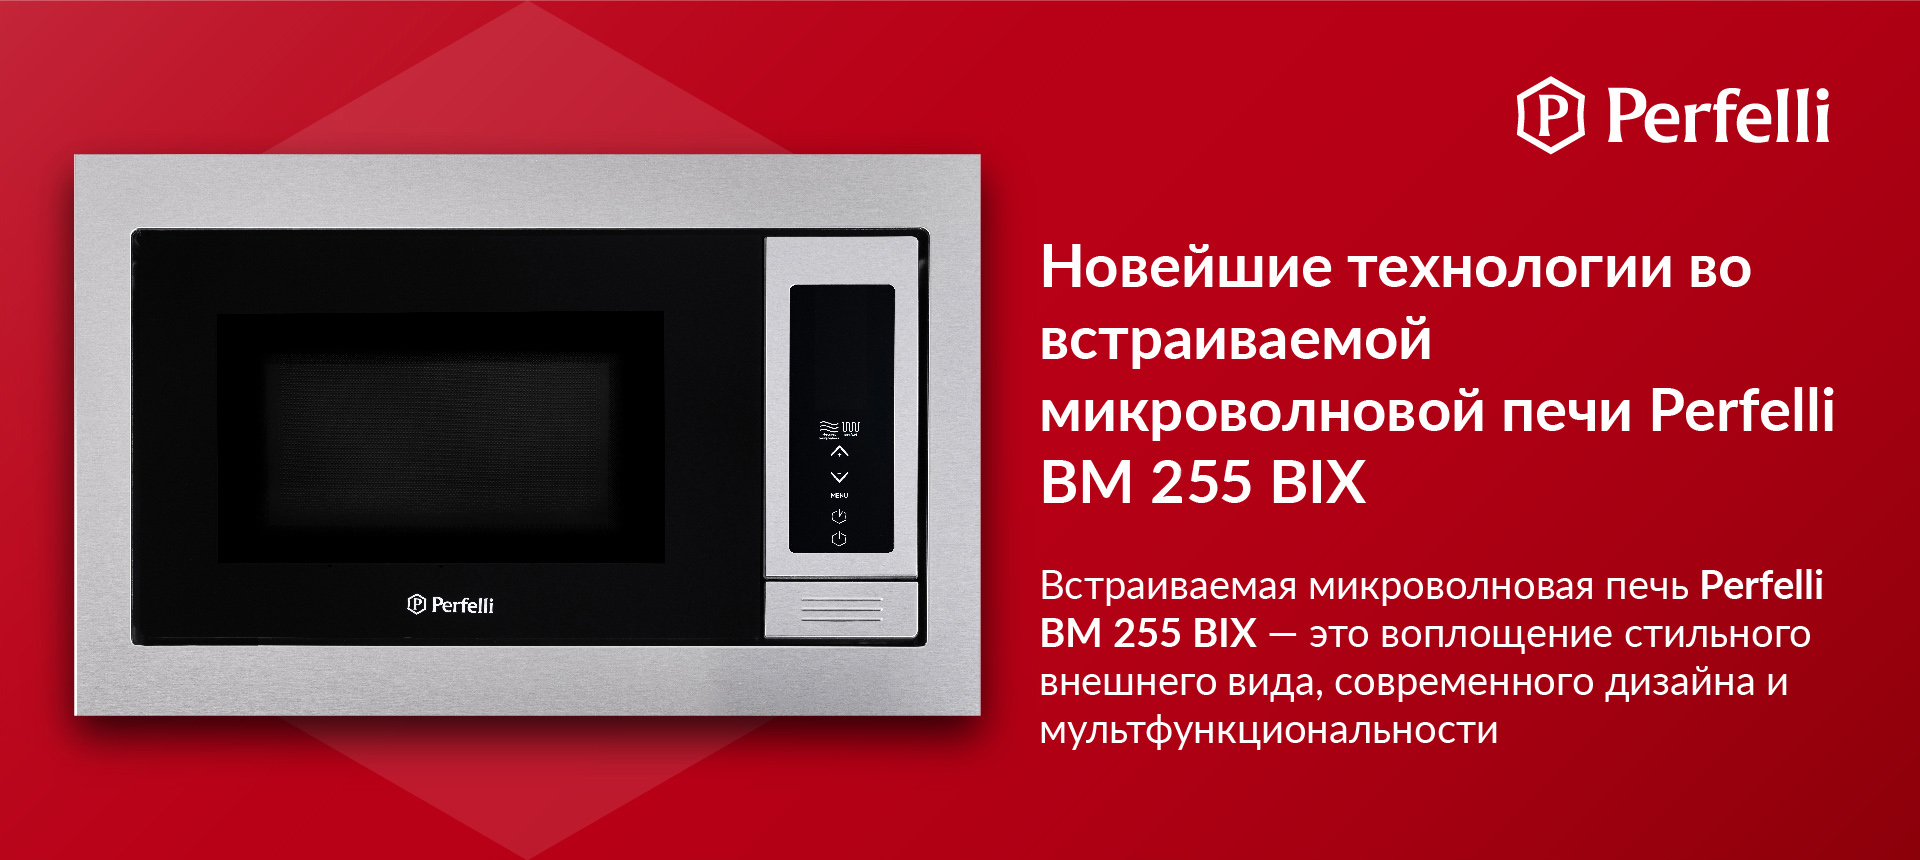 Встраиваемая микроволновая печь Perfelli BM 255 BIX — это воплощение стильного внешнего вида, современного дизайна и мультфункциональности